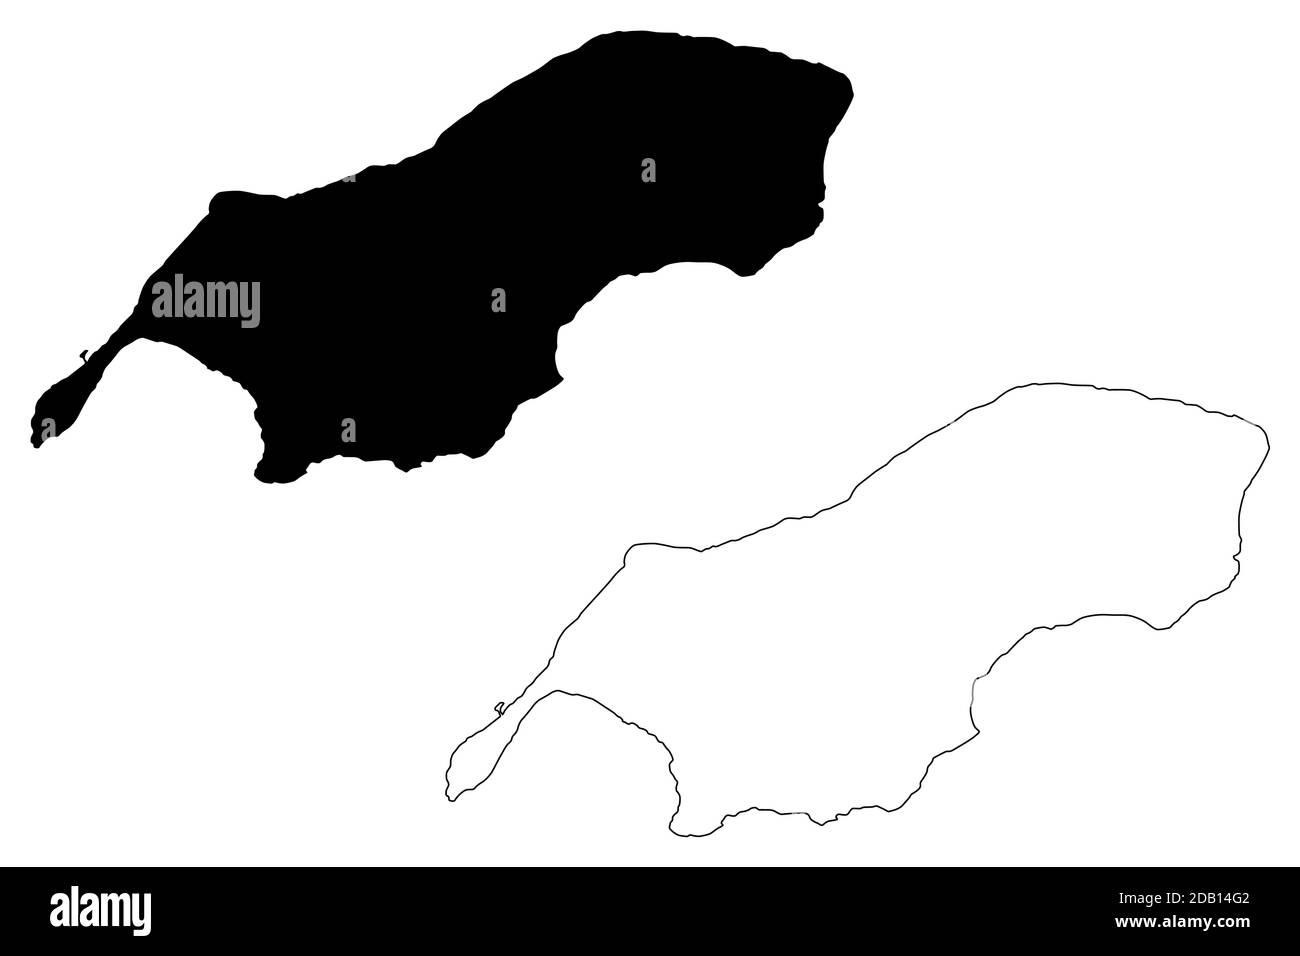 Rota Municipality, Commonwealth delle Isole Marianne Settentrionali (Stati Uniti d'America, USA, Arcipelago Mariano) mappa vettoriale illustrazione, scribbl Illustrazione Vettoriale